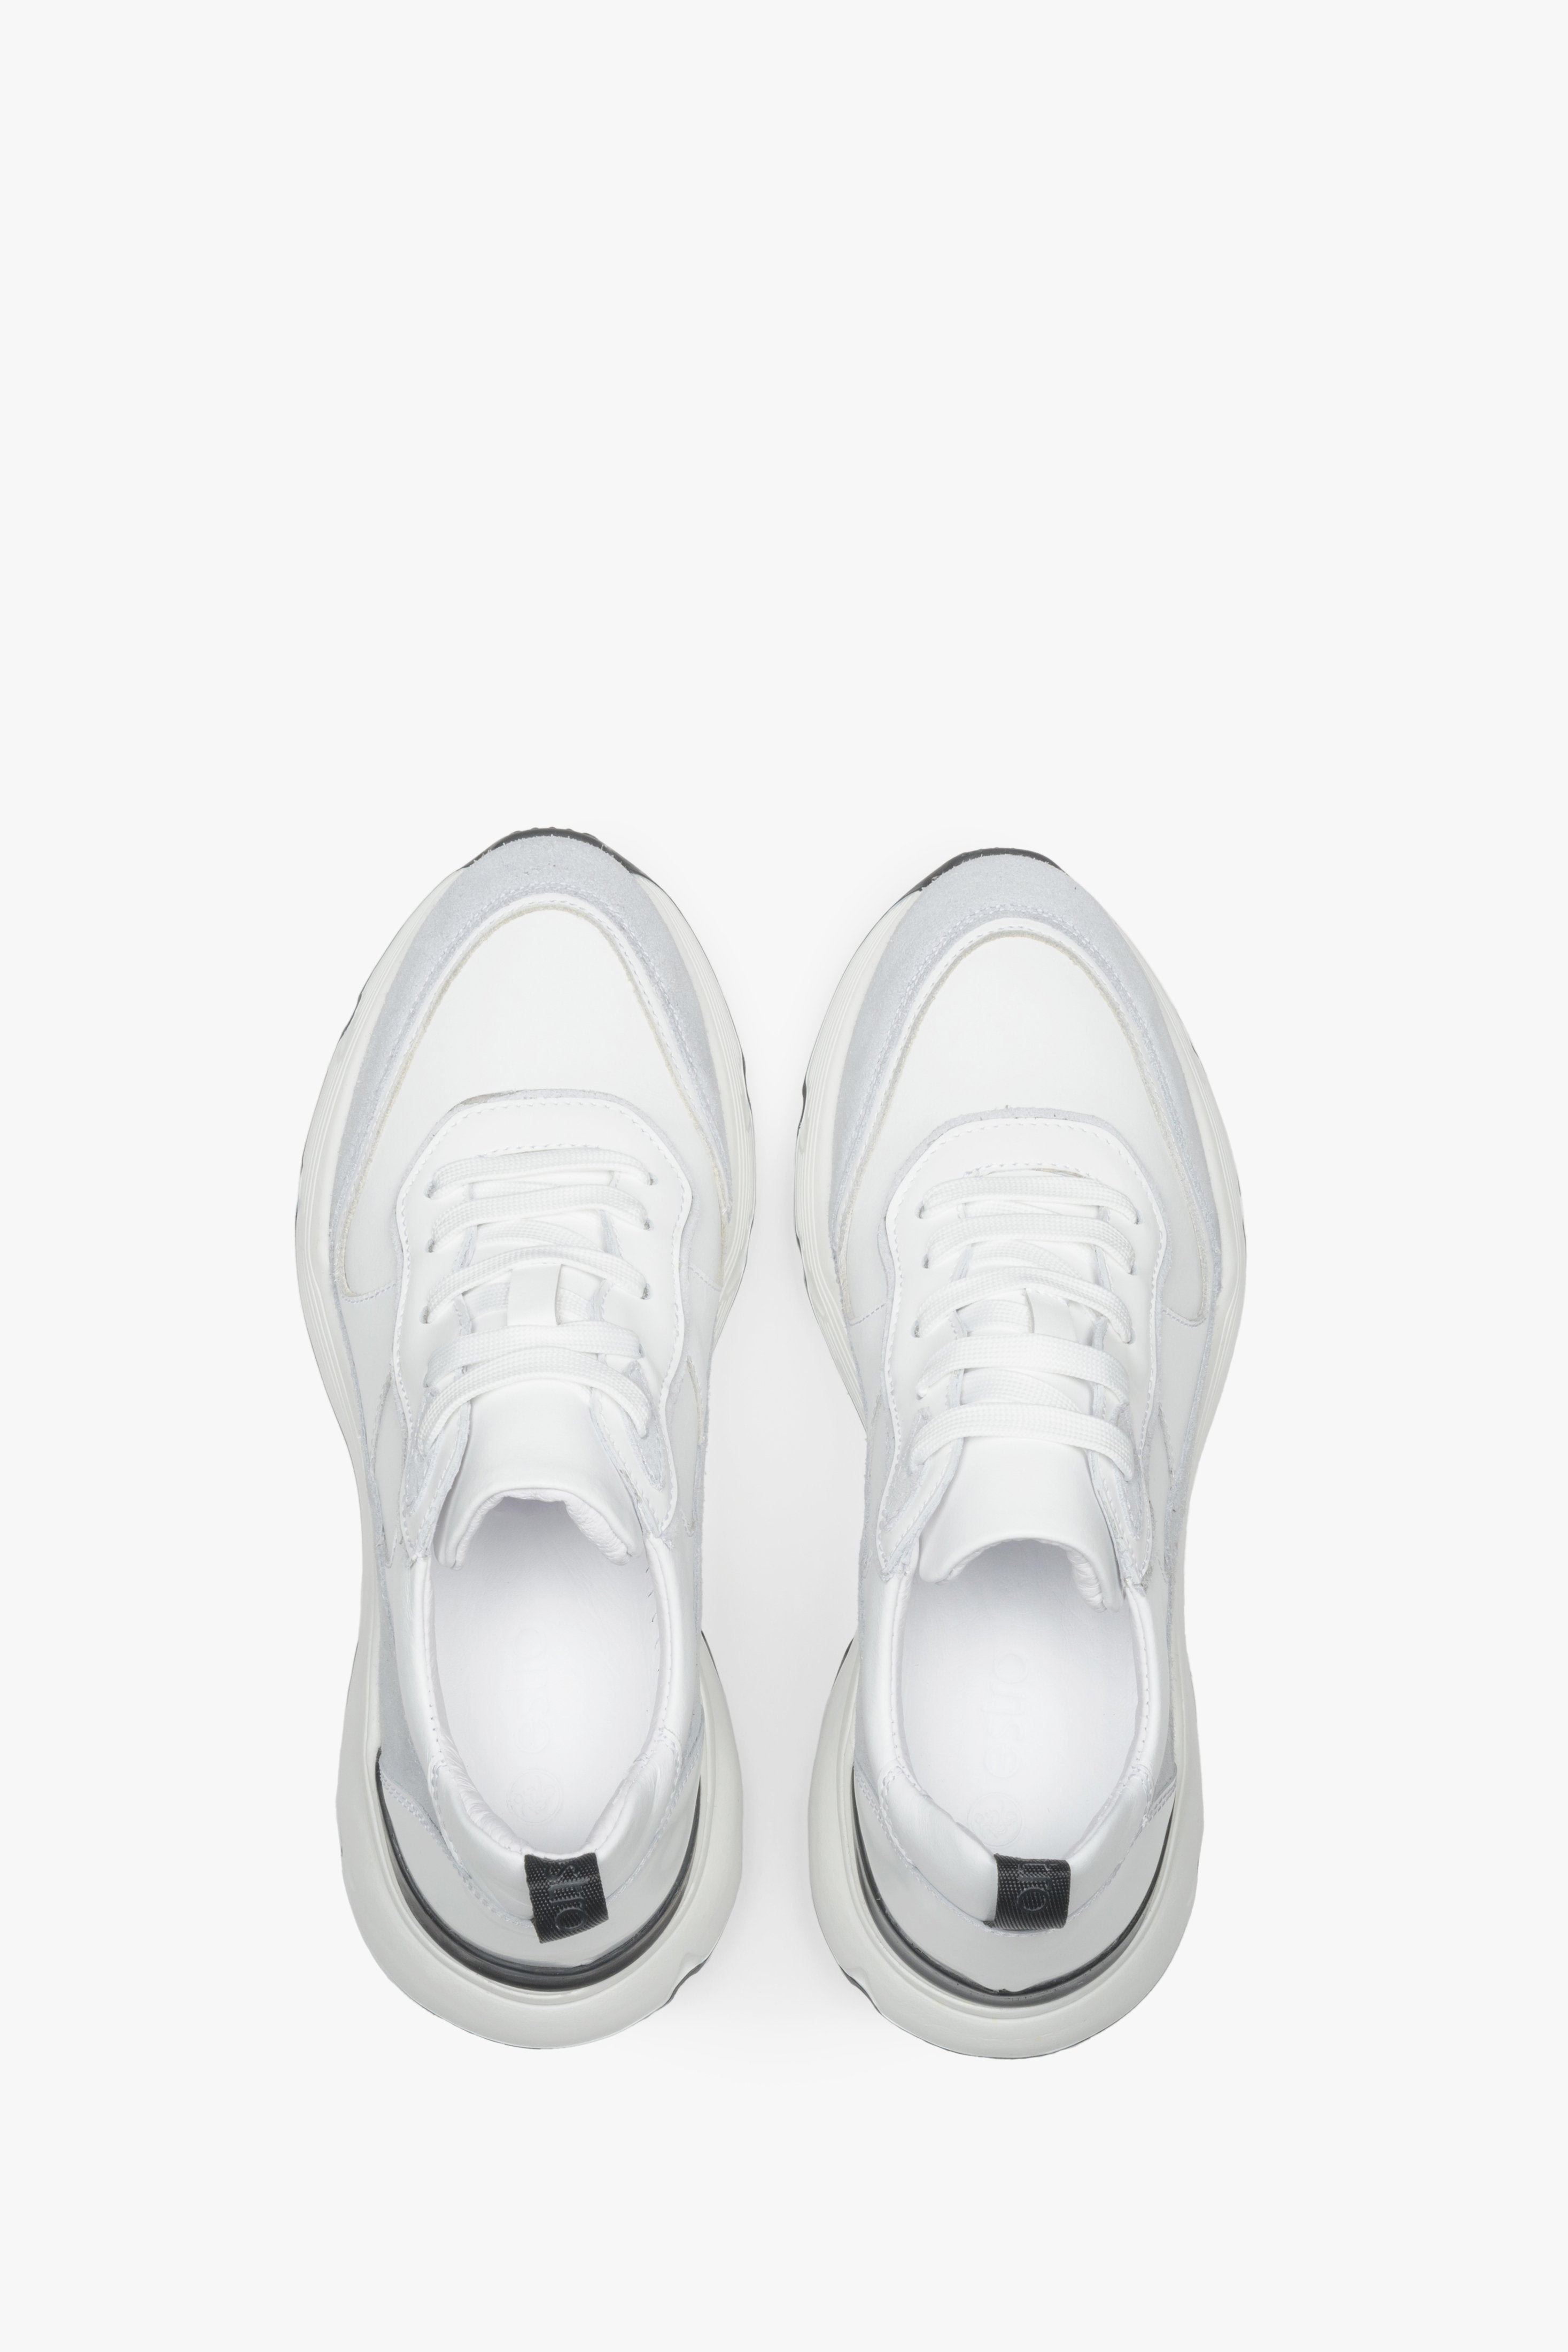 Białe sneakersy damskie skórzane Estro - podgląd na górną część buta.